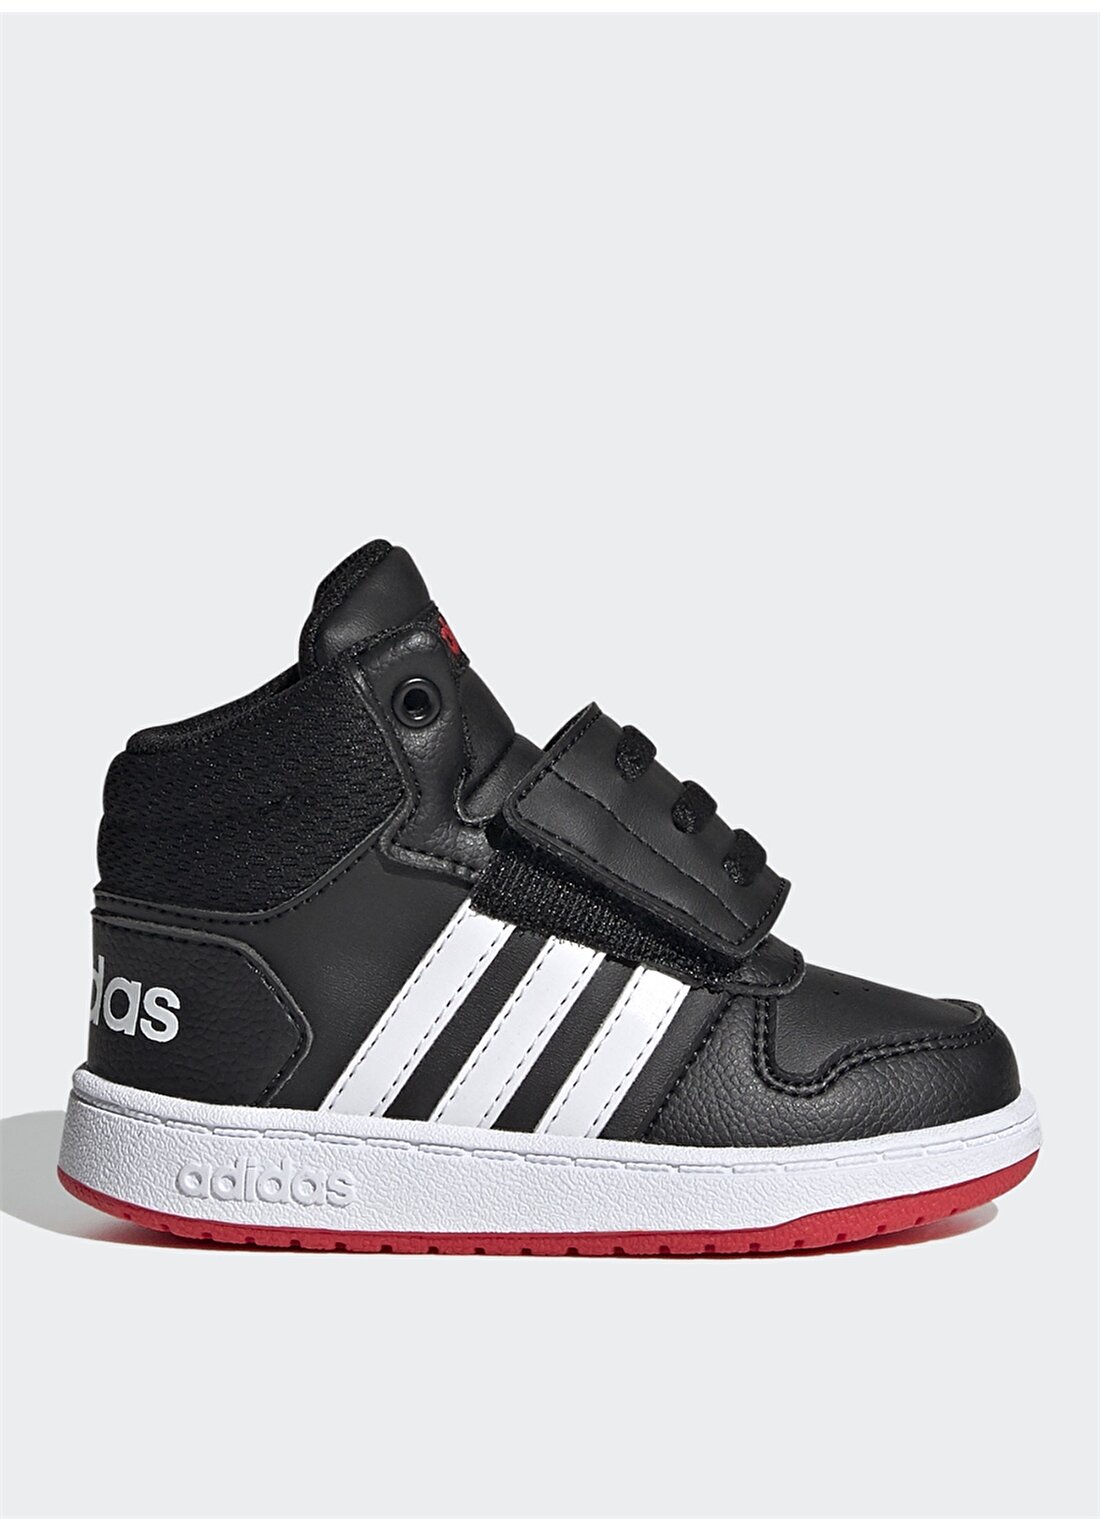 Adidas Fy9291 Hoops Mid 2 Siyah - Beyaz - Kırmızı Erkek Çocuk Yürüyüş Ayakkabısı